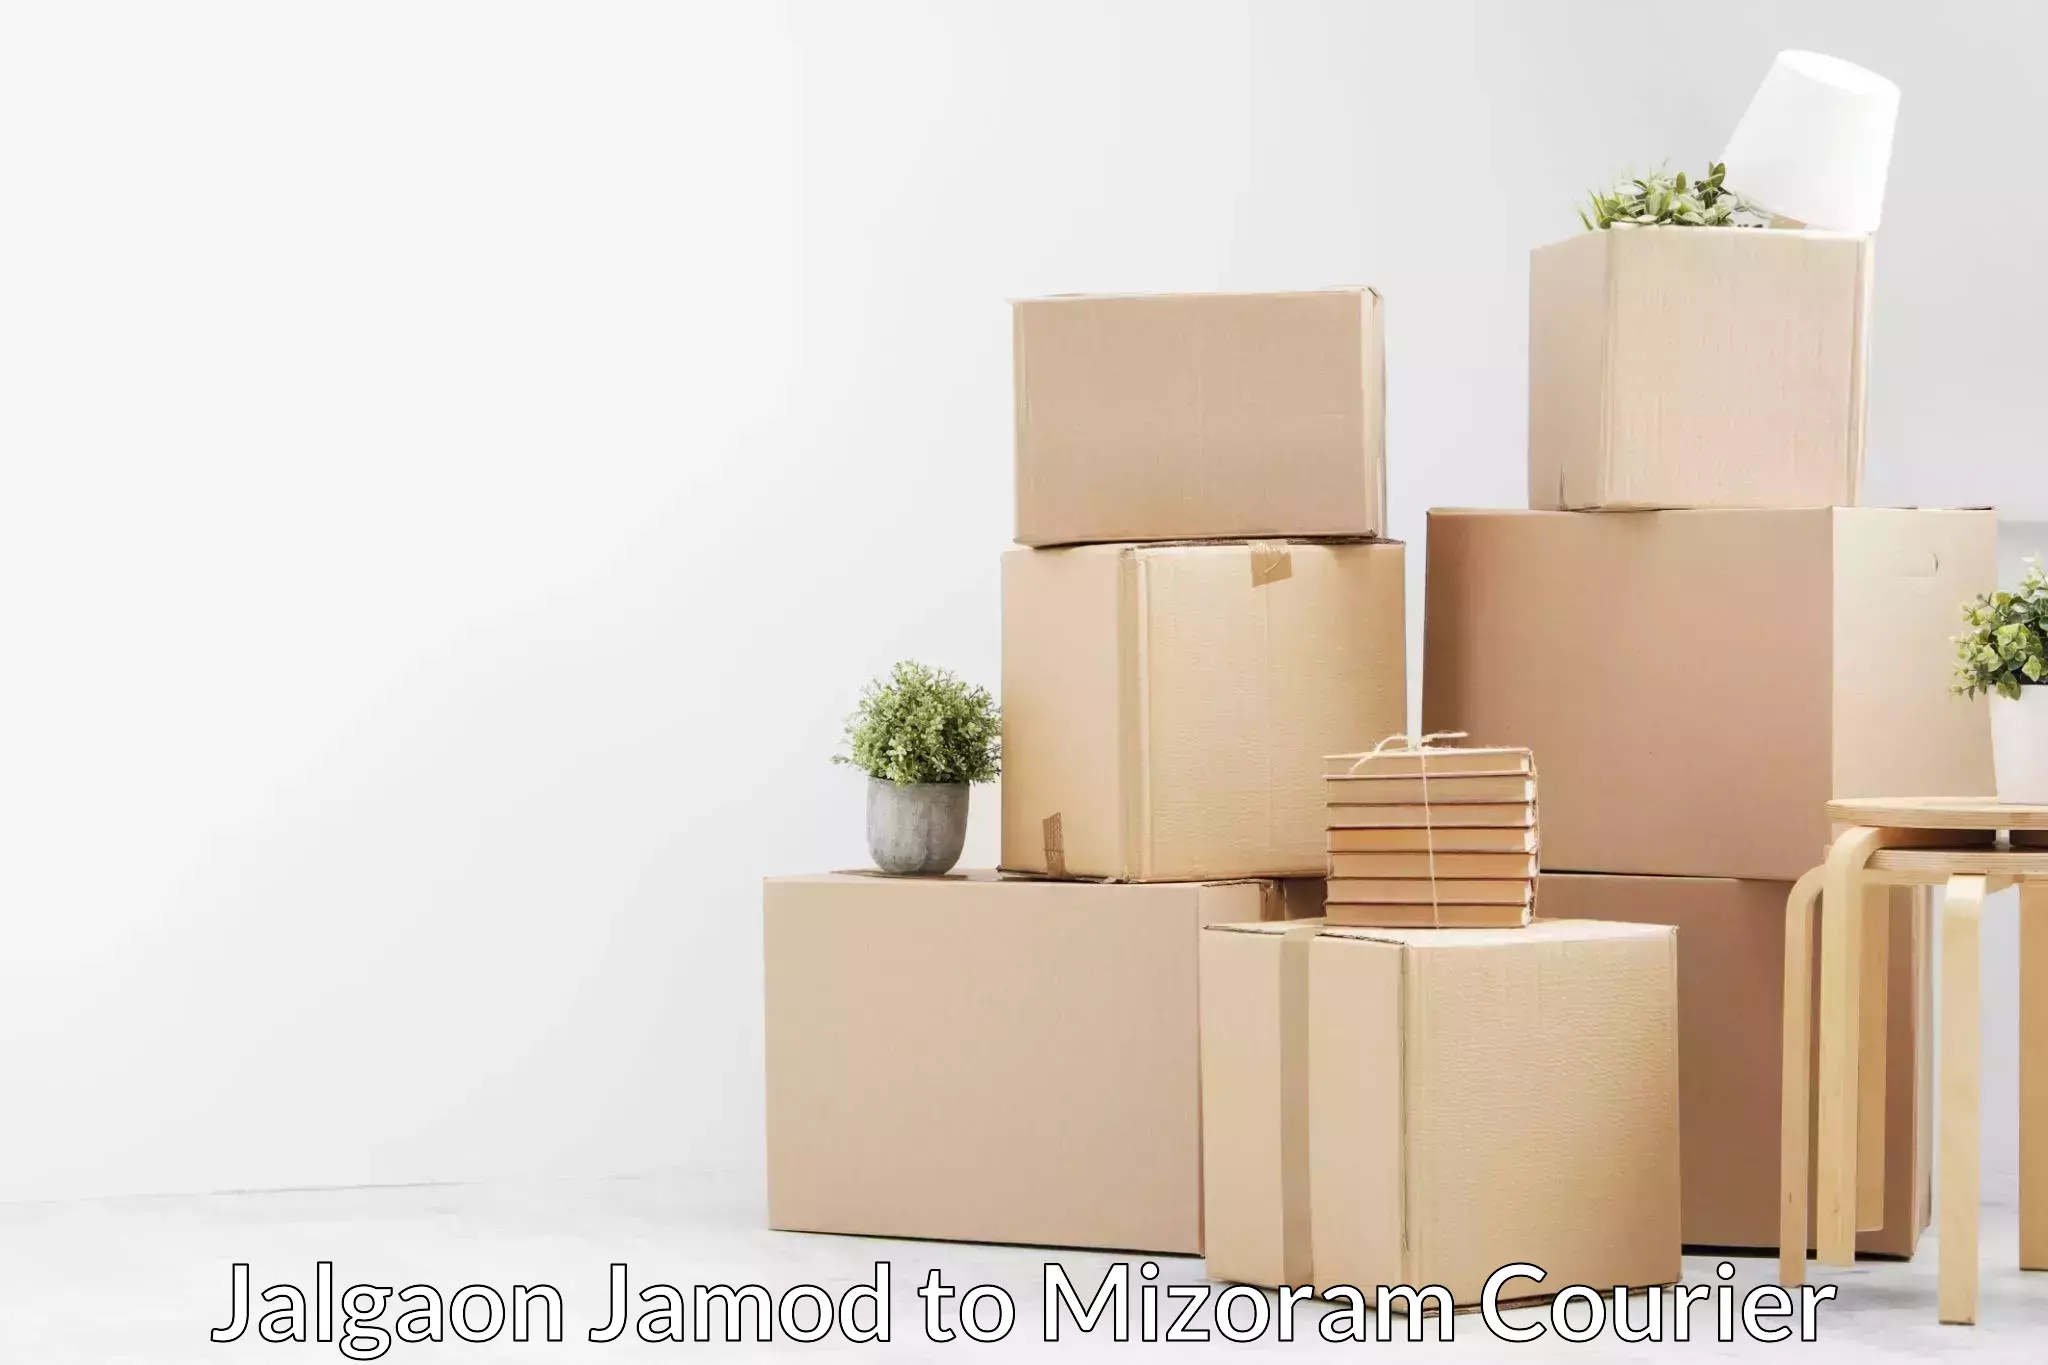 Trusted moving company Jalgaon Jamod to NIT Aizawl